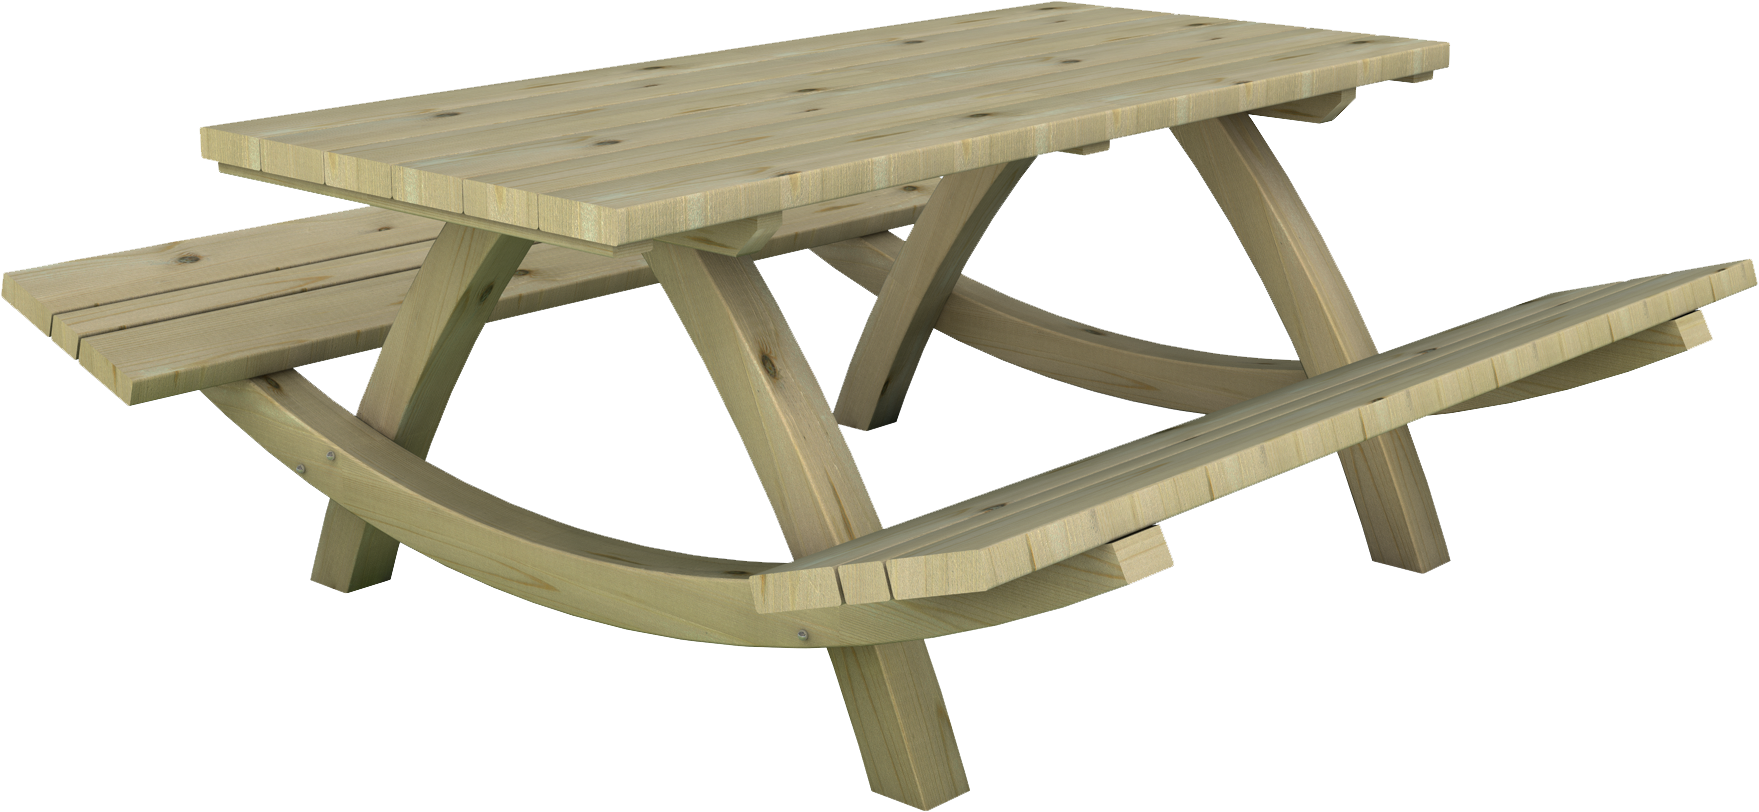 Tavolo con panche integrate in legno di pino nordico impregnato in autoclave realizzato da Linea Montanalegno - ILT